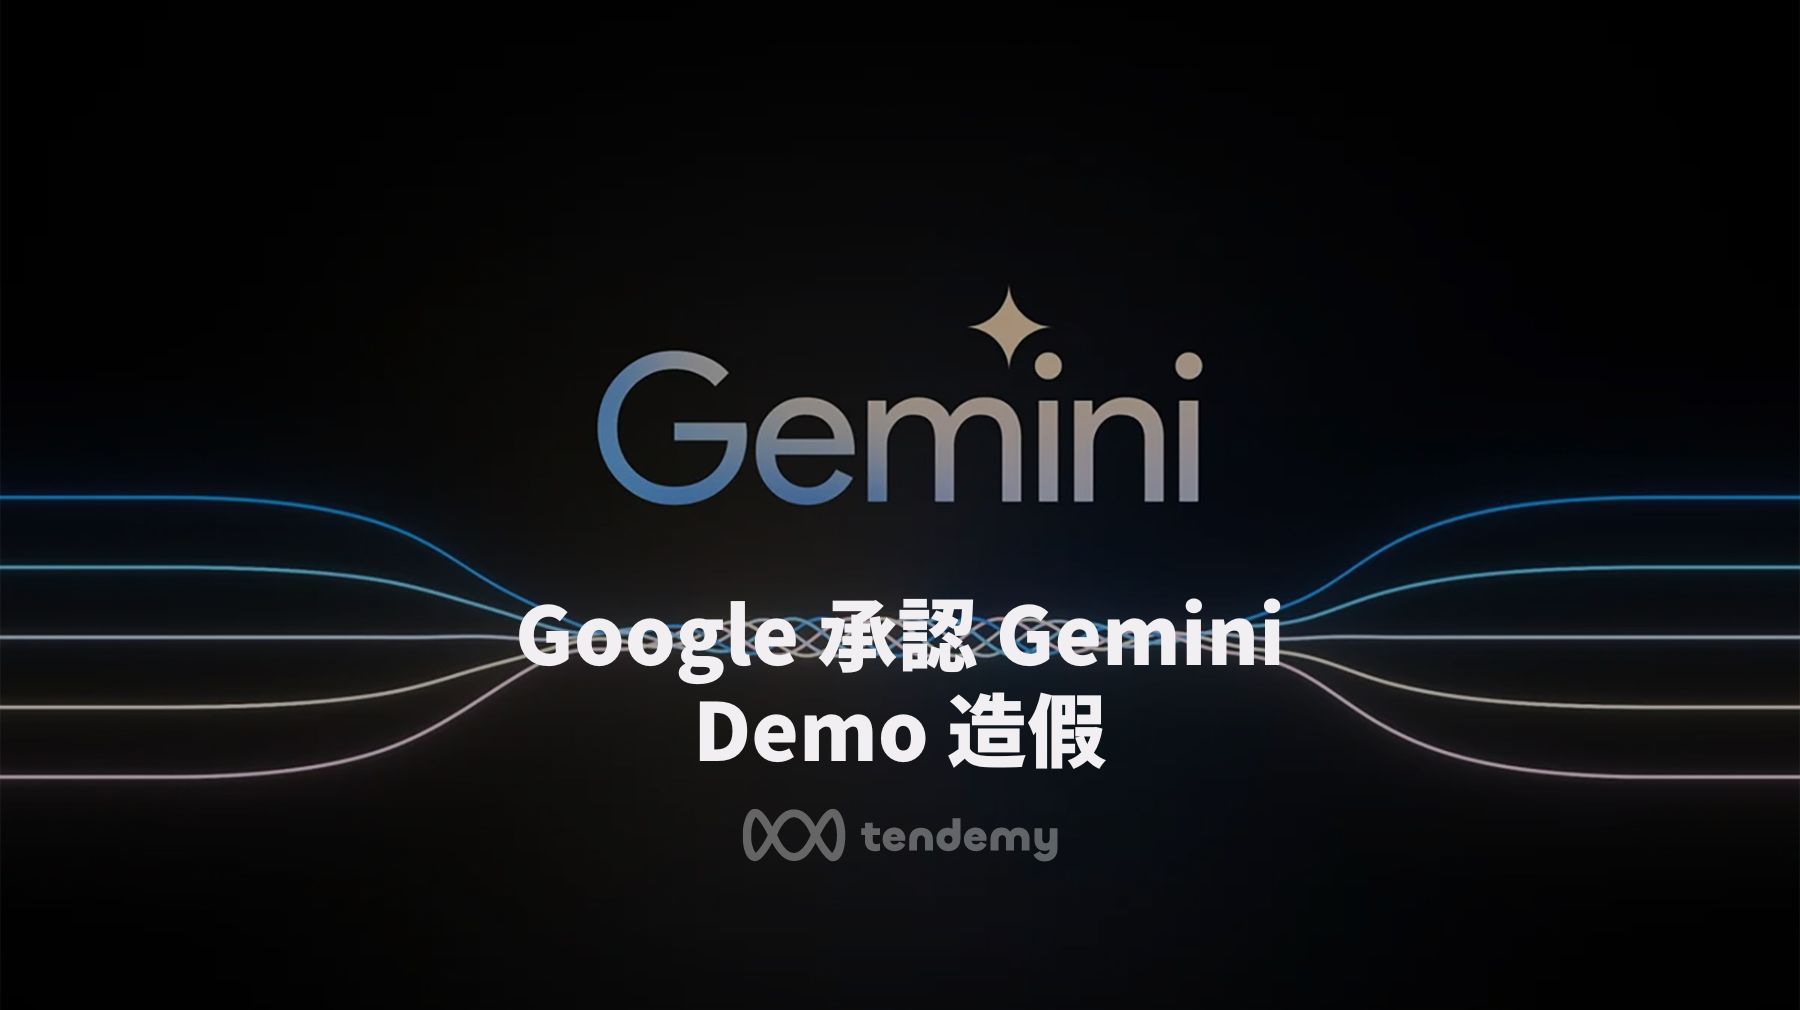 Google 承認日前的 Gemini 影片造假